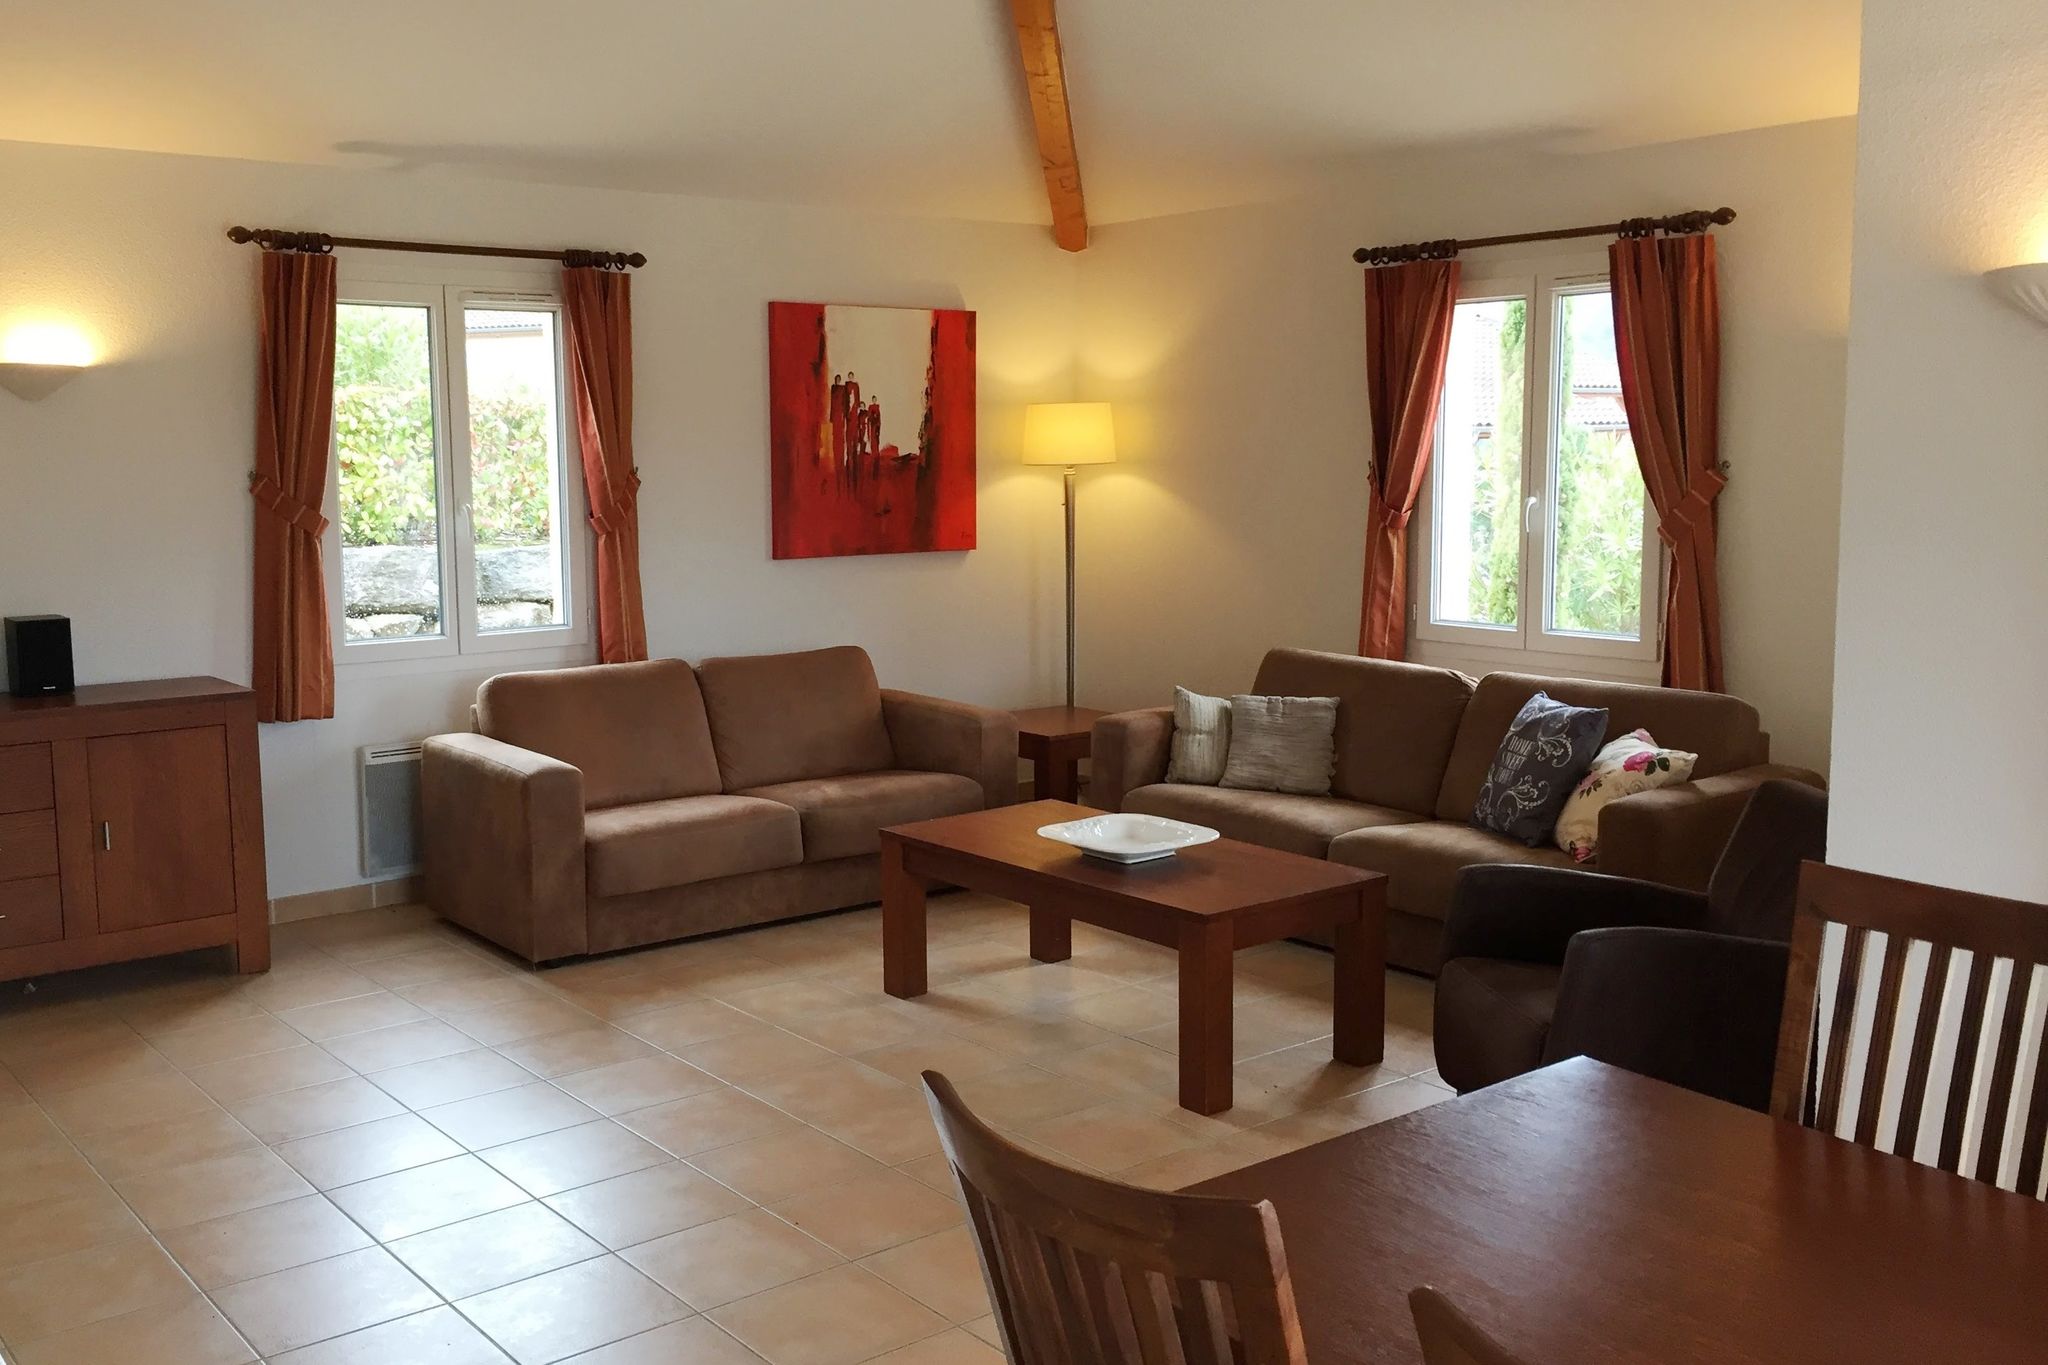 Villa de luxe sur un domaine privé, située presque directement sur l'Ardèche!!